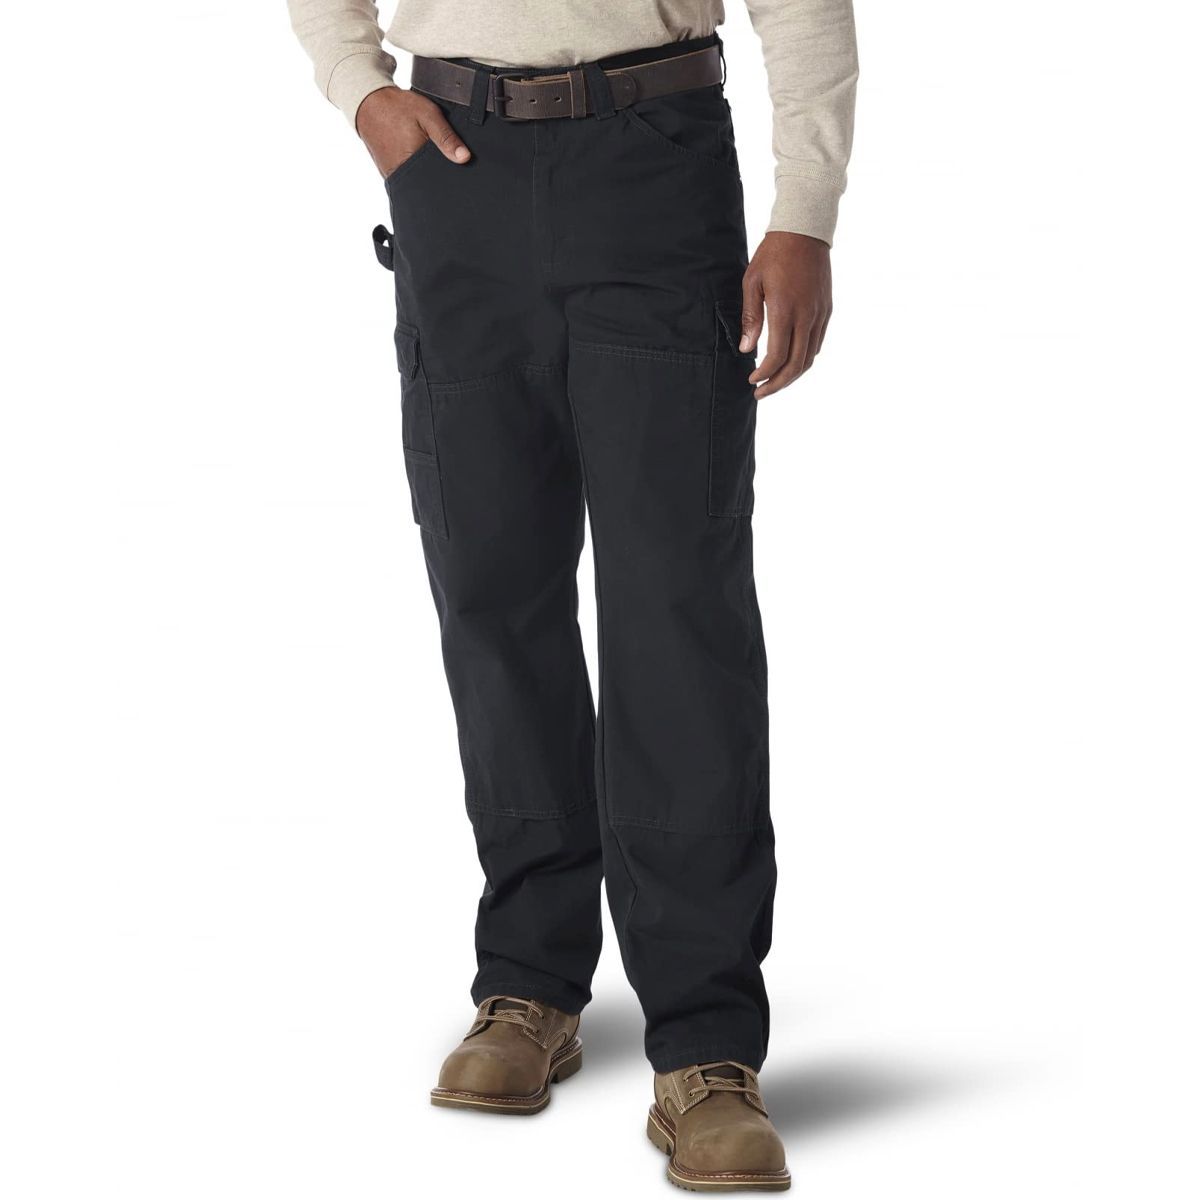 Wrangler Mens Outdoor Performance Zip Cargo Pants  Walmartcom  Cargo  pants men Cargo pant Outdoor shirt